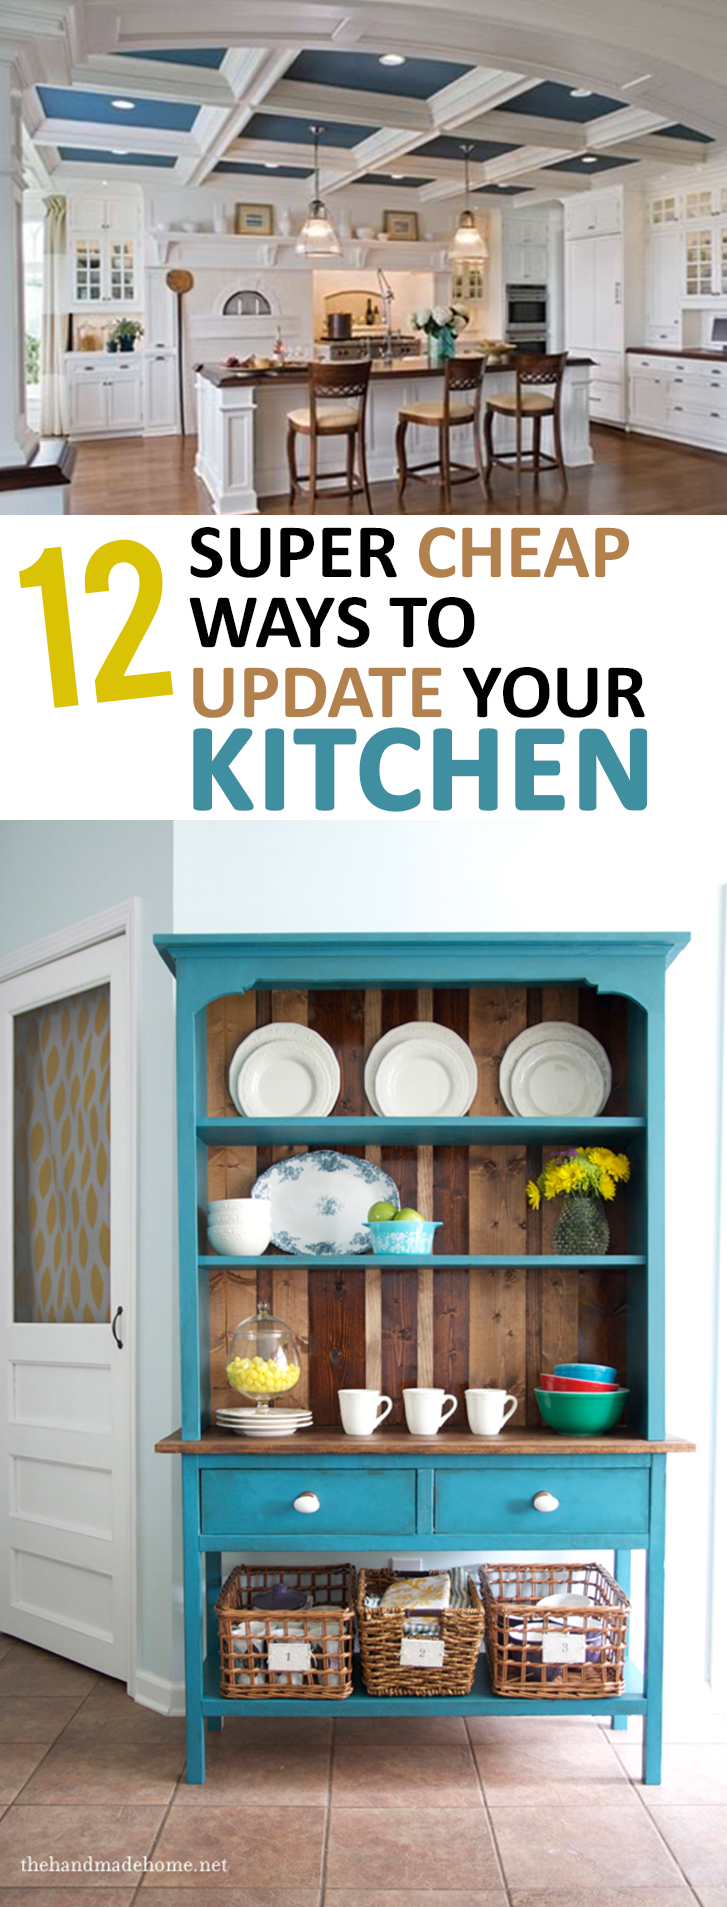 kitchen update cheap diy ways super decor updates easy cabinets